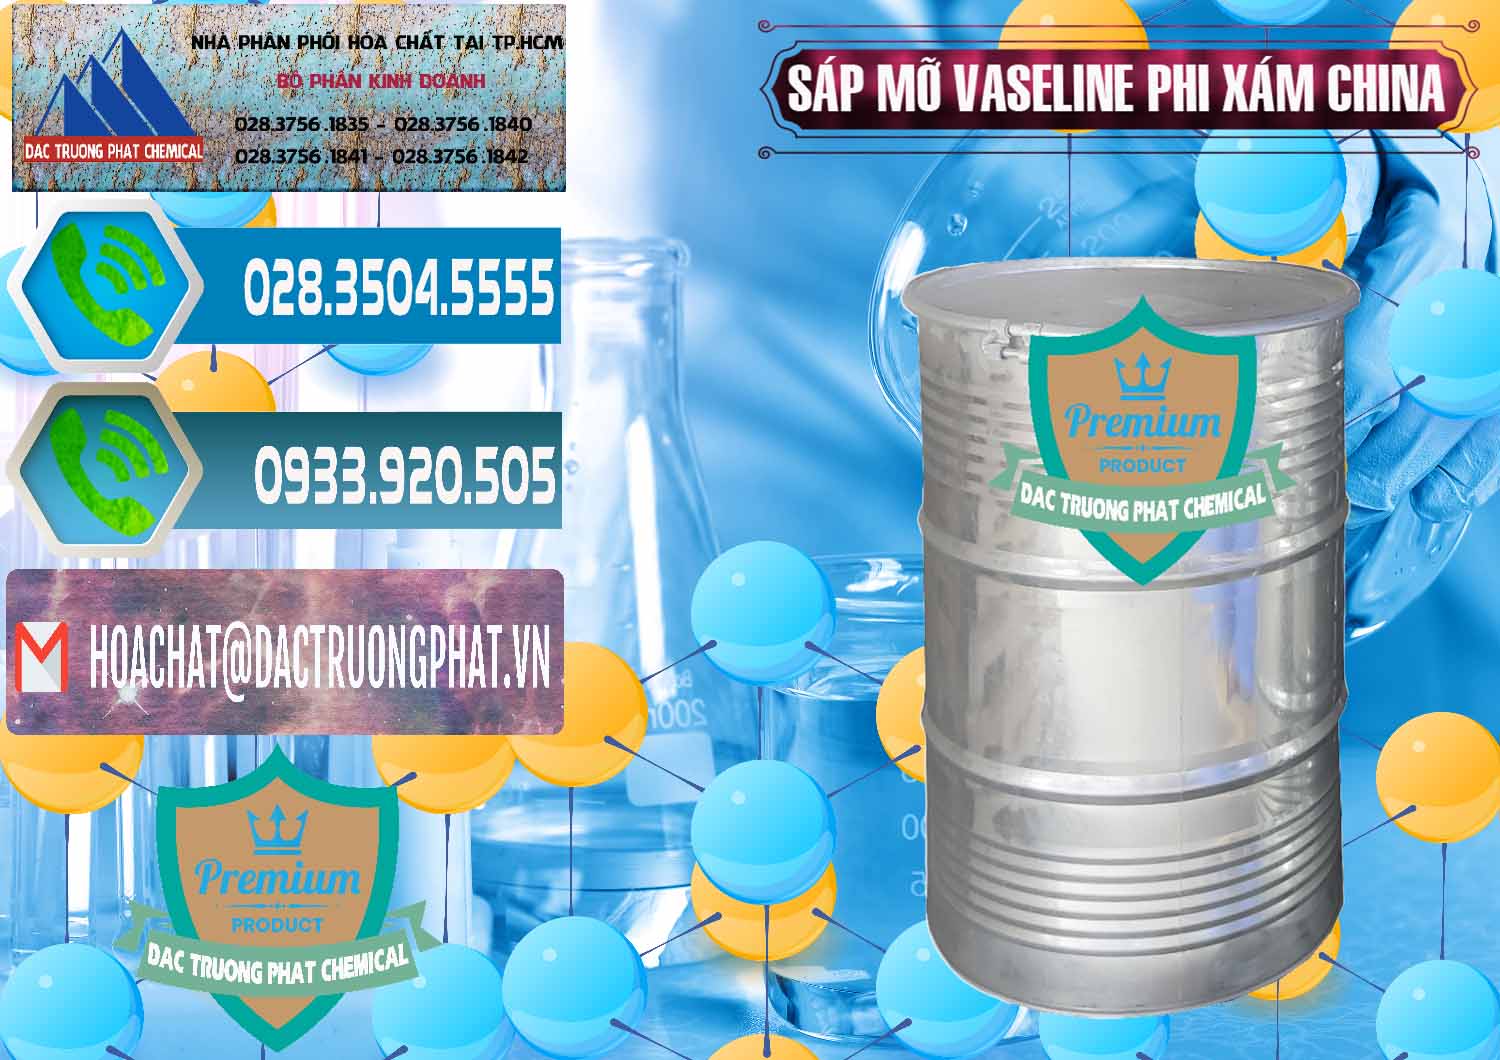 Đơn vị chuyên phân phối & bán Sáp Mỡ Vaseline Phi Xám Trung Quốc China - 0291 - Cty chuyên cung cấp ( nhập khẩu ) hóa chất tại TP.HCM - congtyhoachat.net